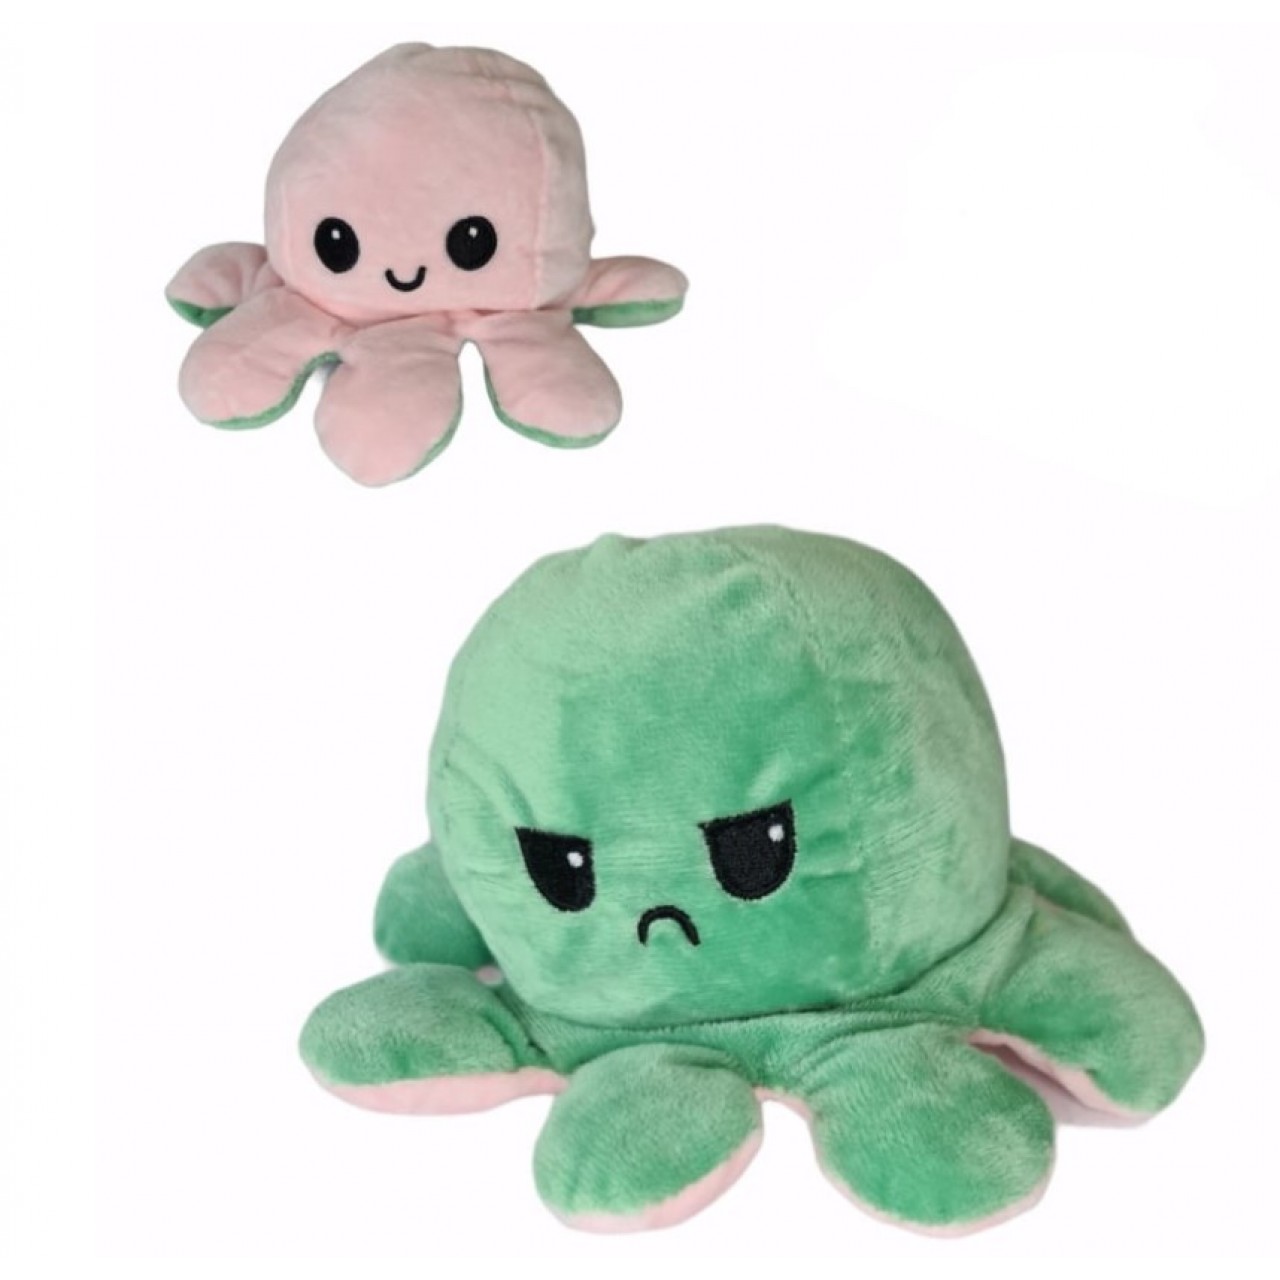 Χταπόδι διπλής όψης λούτρινο emotional reversible octopus plush 12 εκ - 5270 - Πράσινο / Ροζ Ανοιχτό